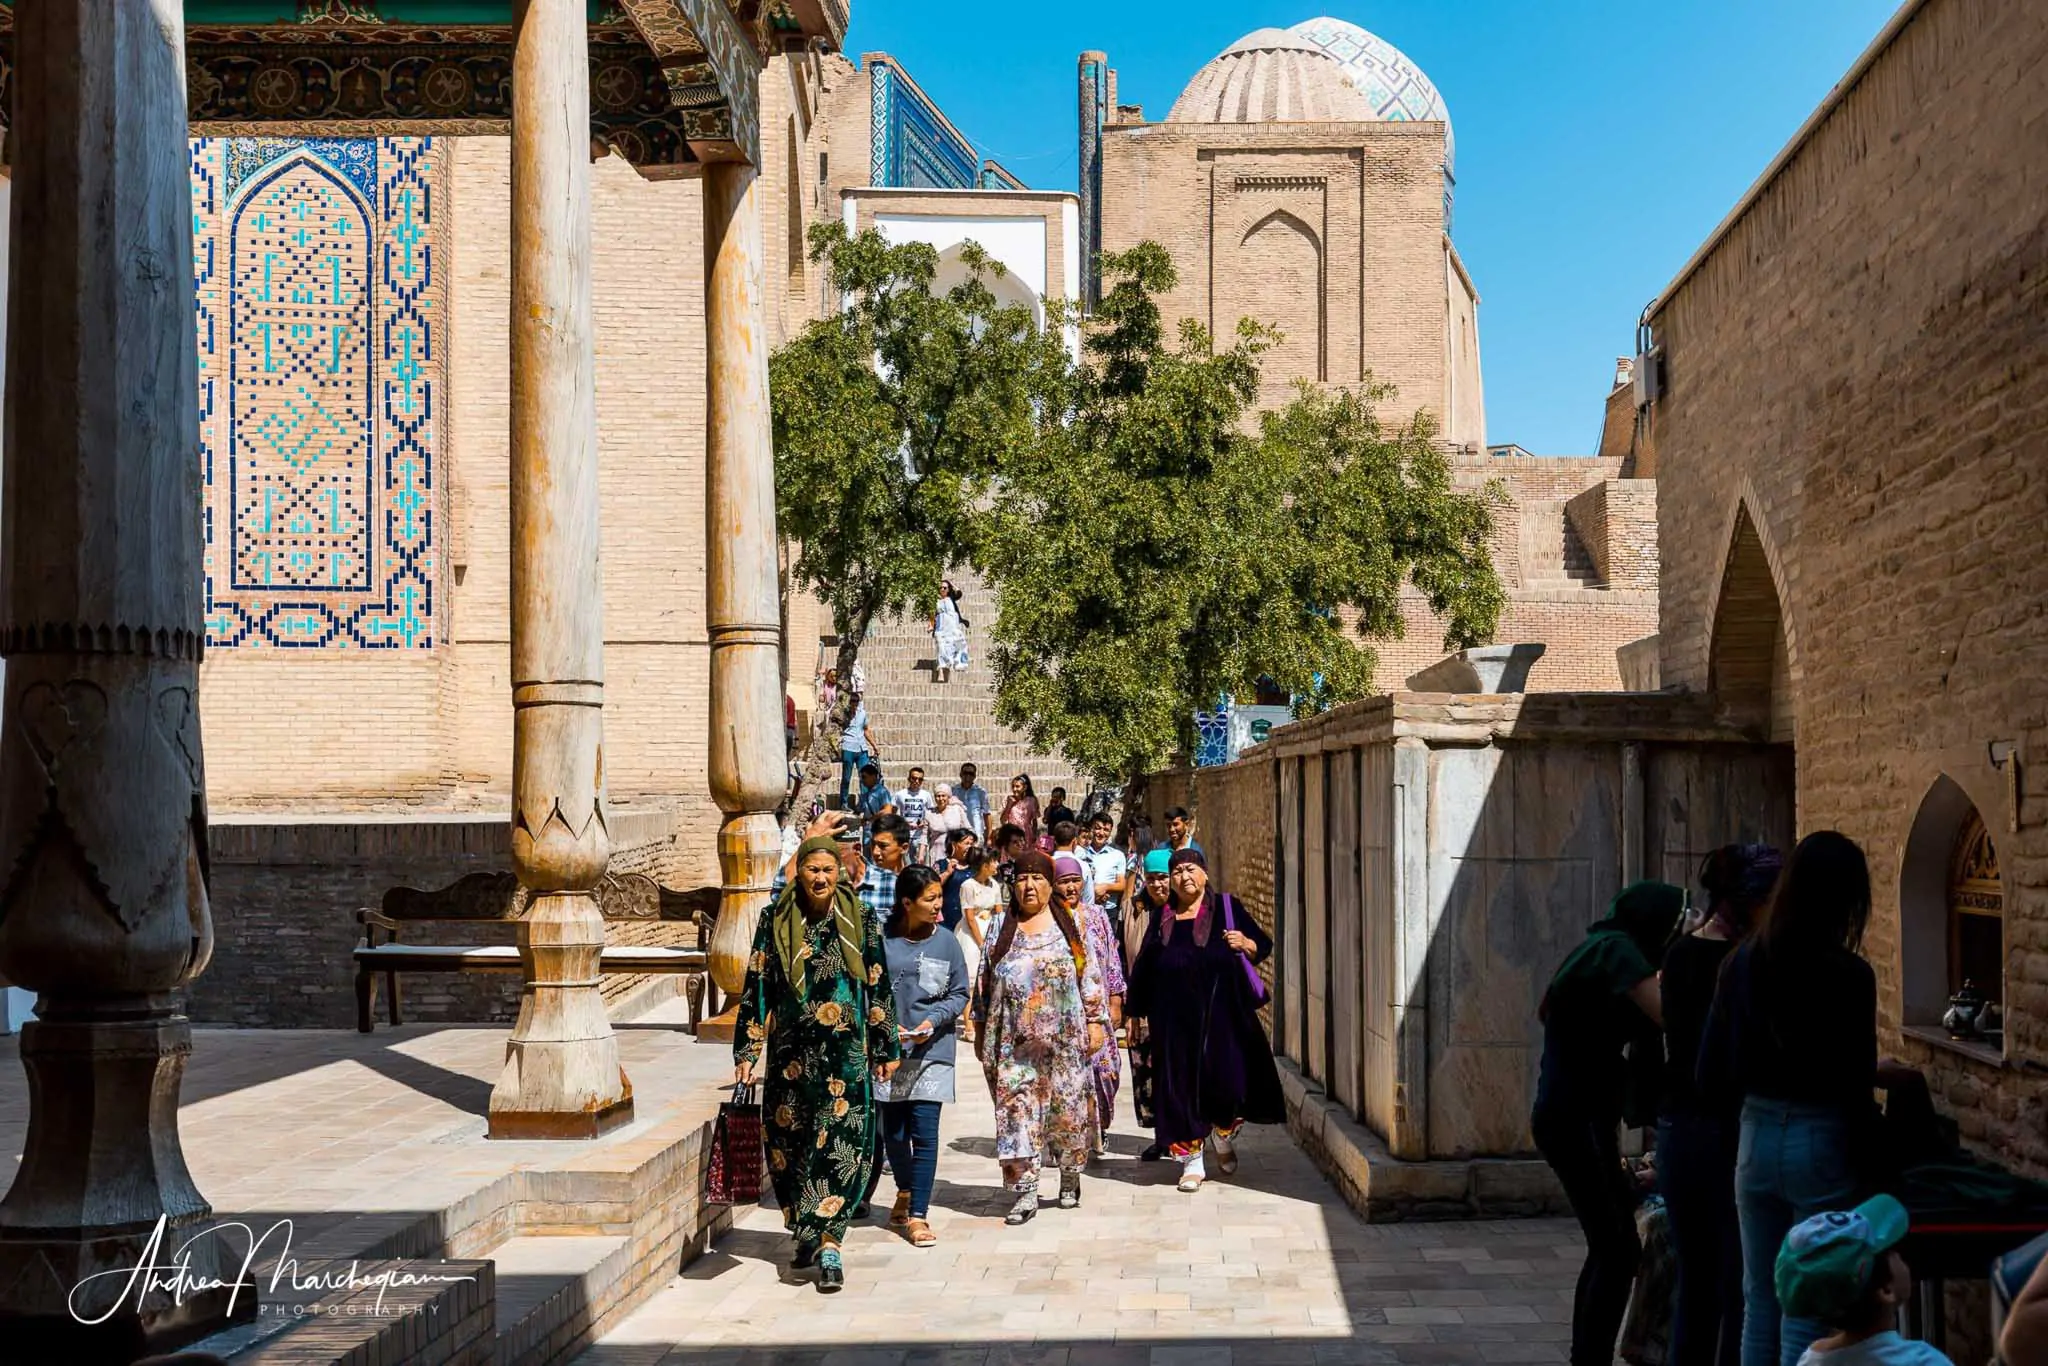 Shah-i Zinda, Samarkand